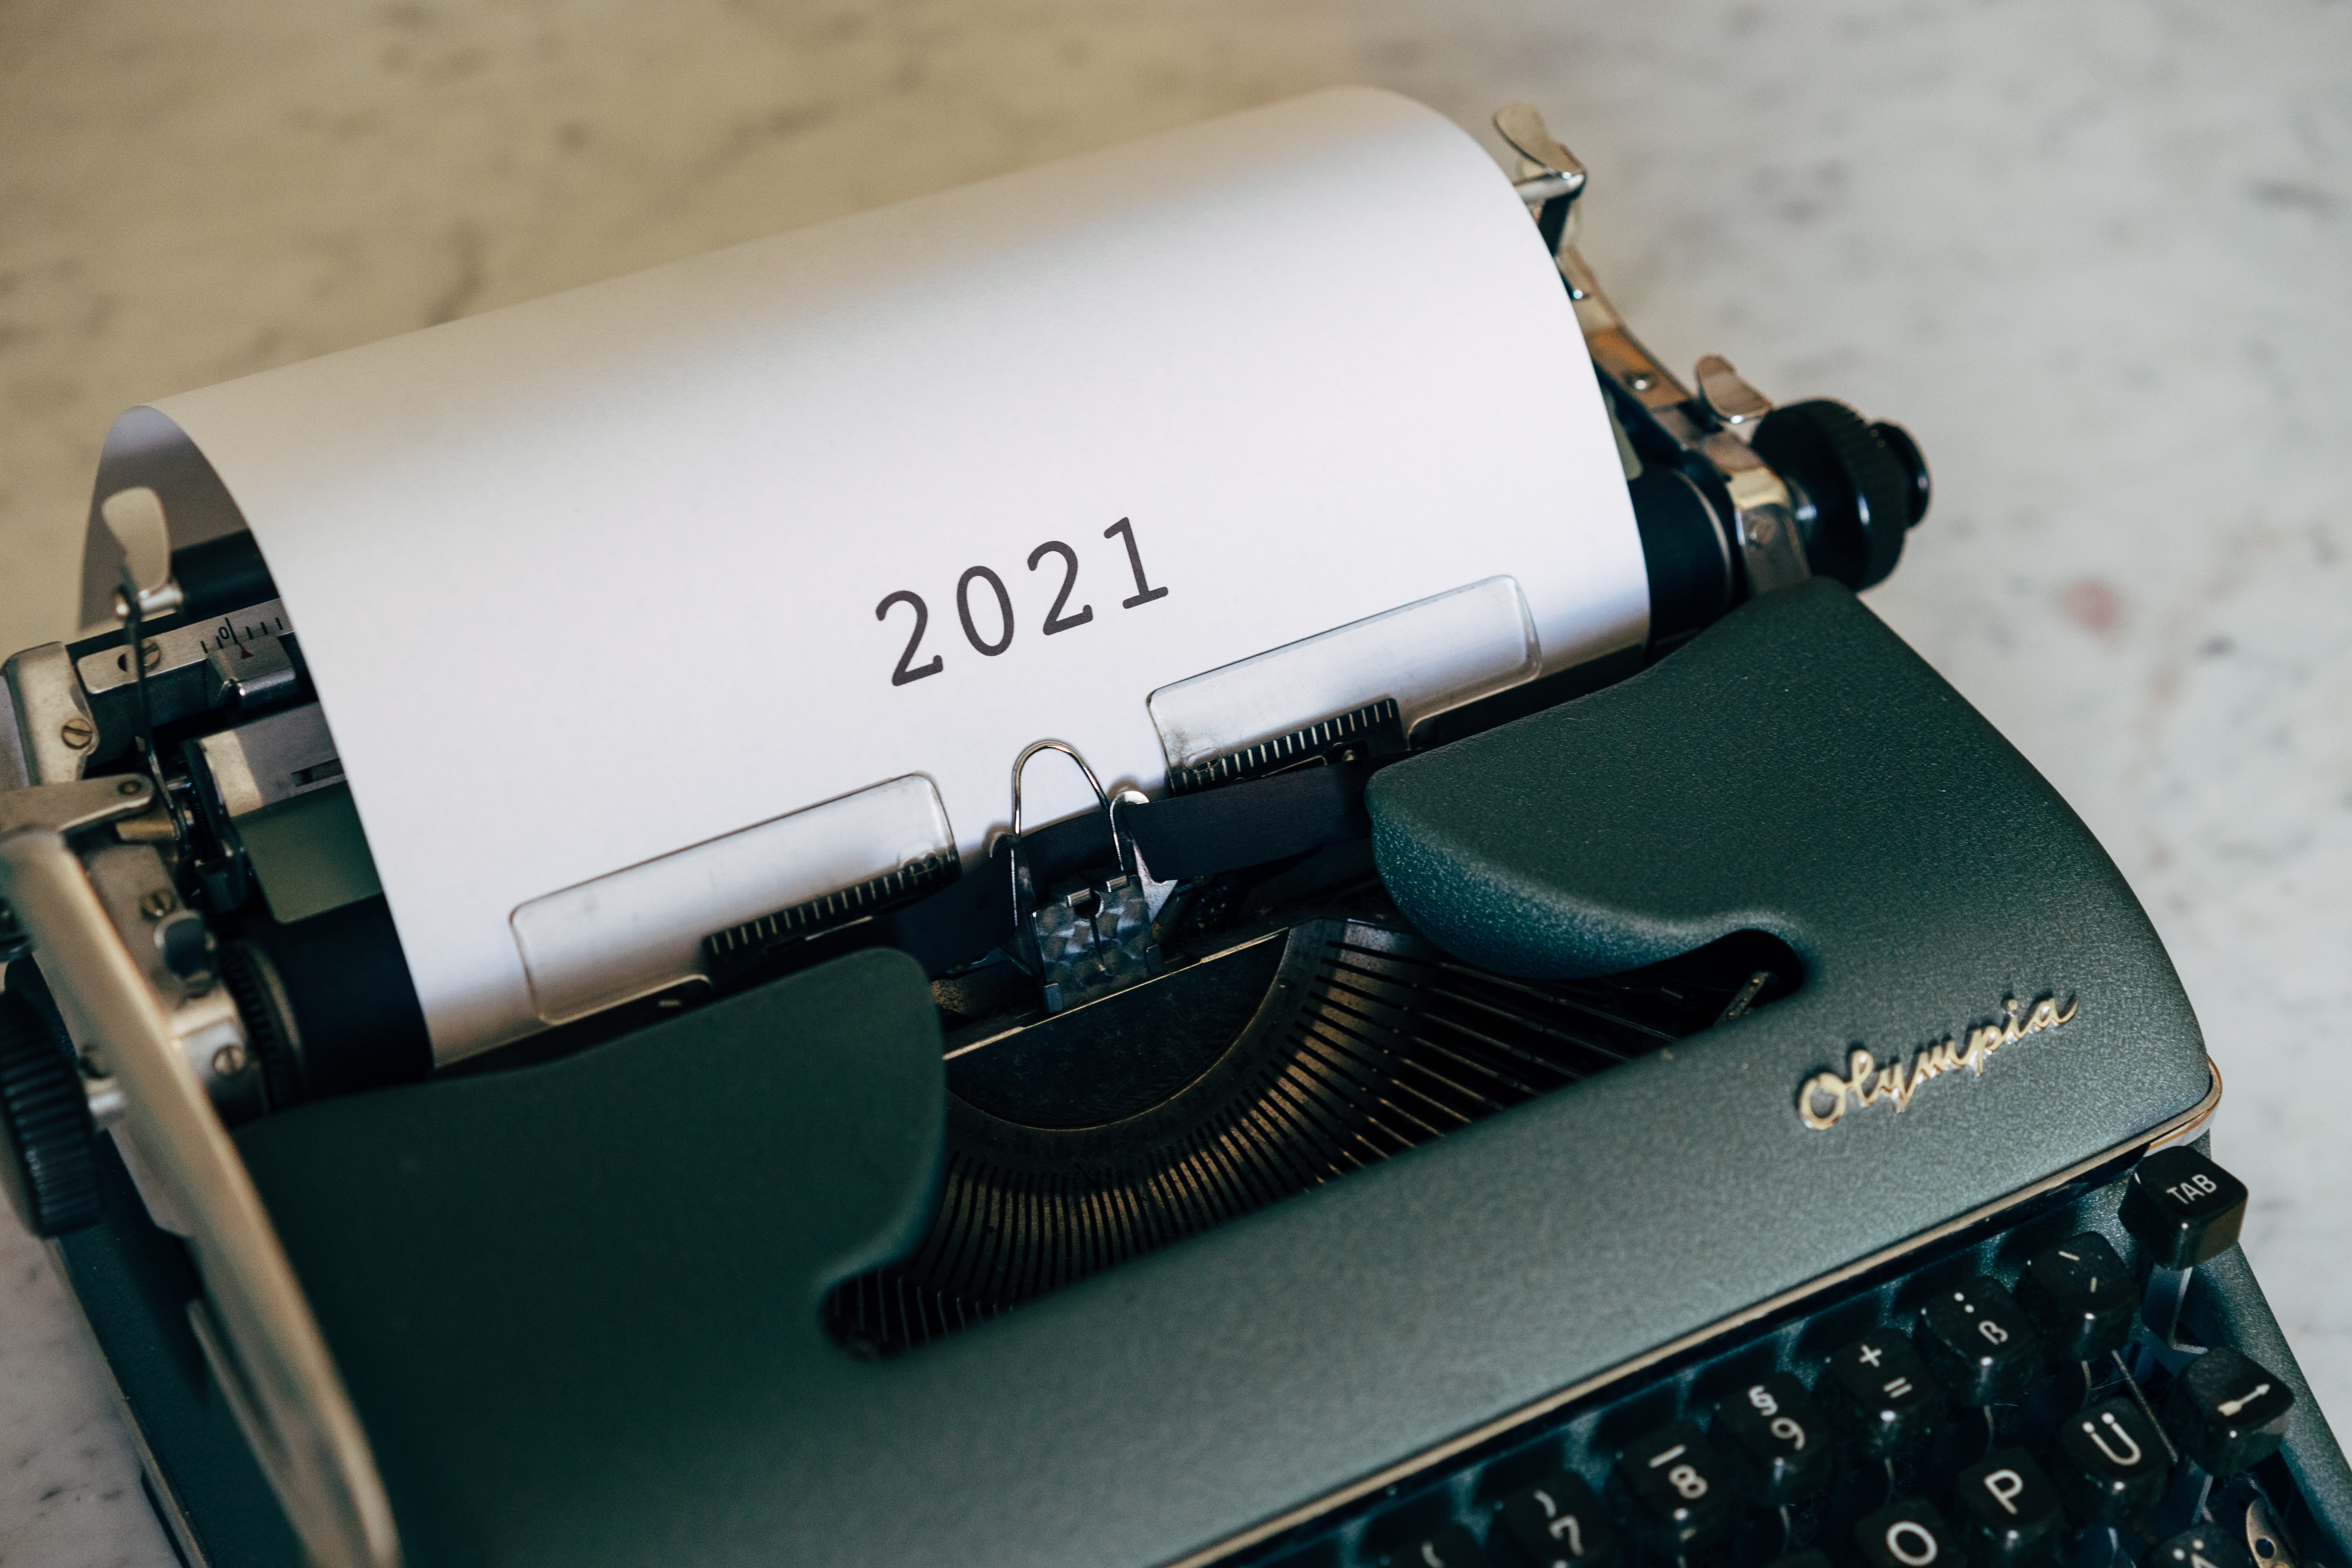 writing 2021 on a typewriter